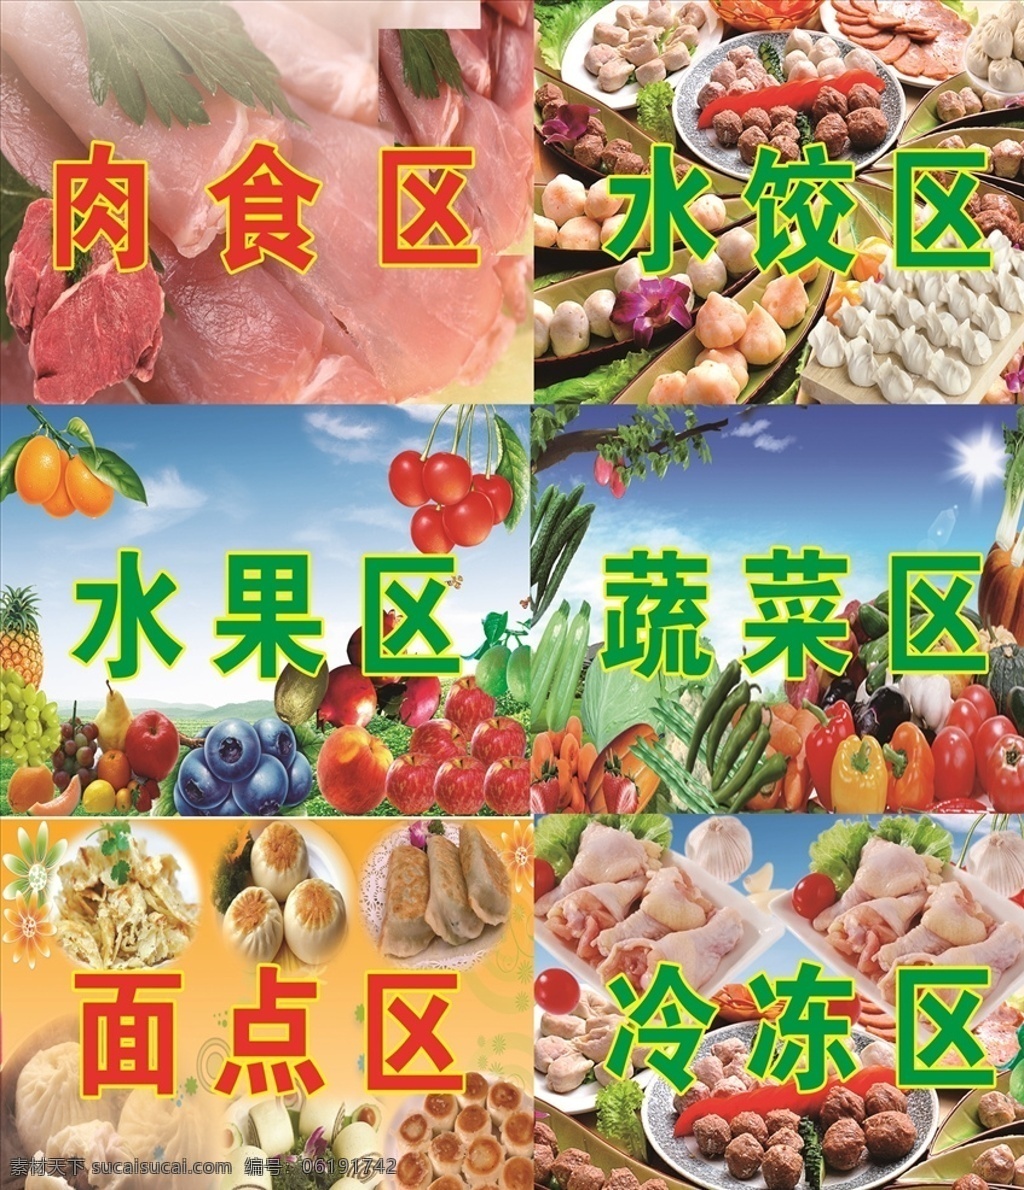 冷冻 区 肉食 蔬菜 水果 水饺 冷冻区 肉食区 蔬菜区 水果区 水饺区 超市海报